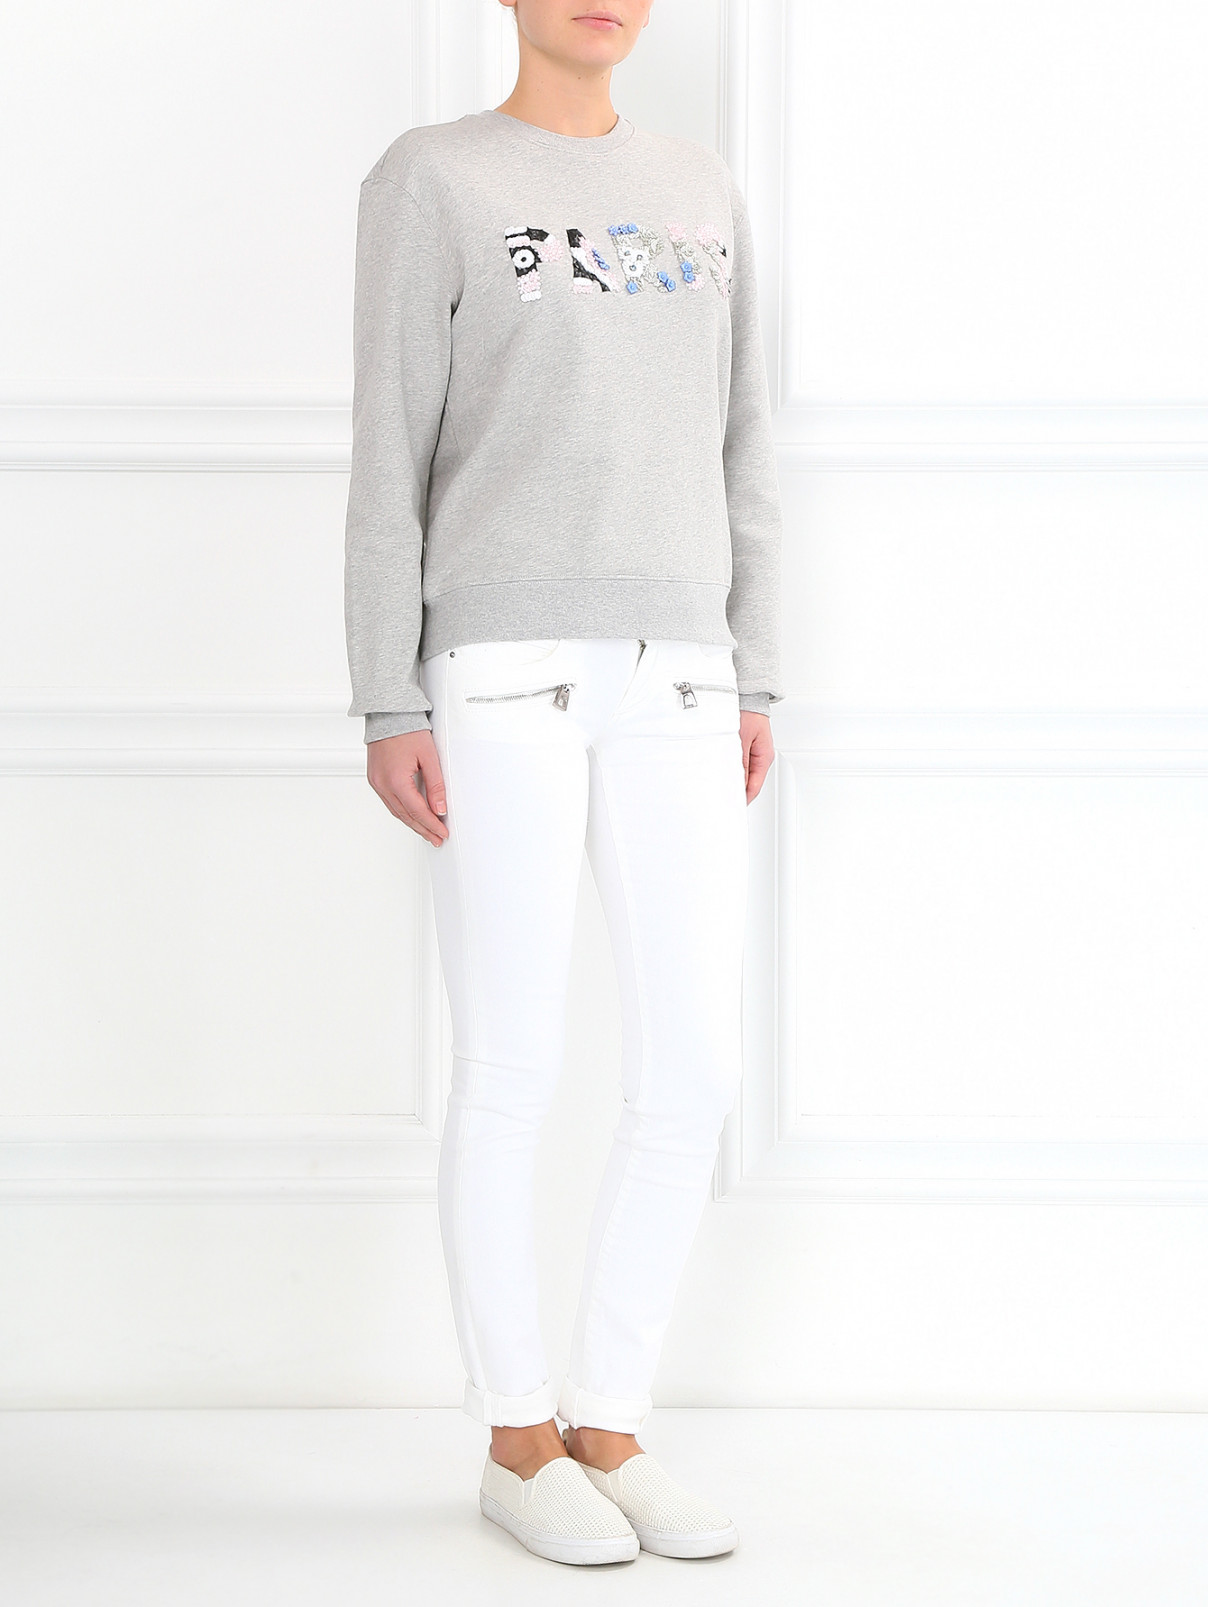 Узкие джинсы из светлого денима Barbara Bui  –  Модель Общий вид  – Цвет:  Белый